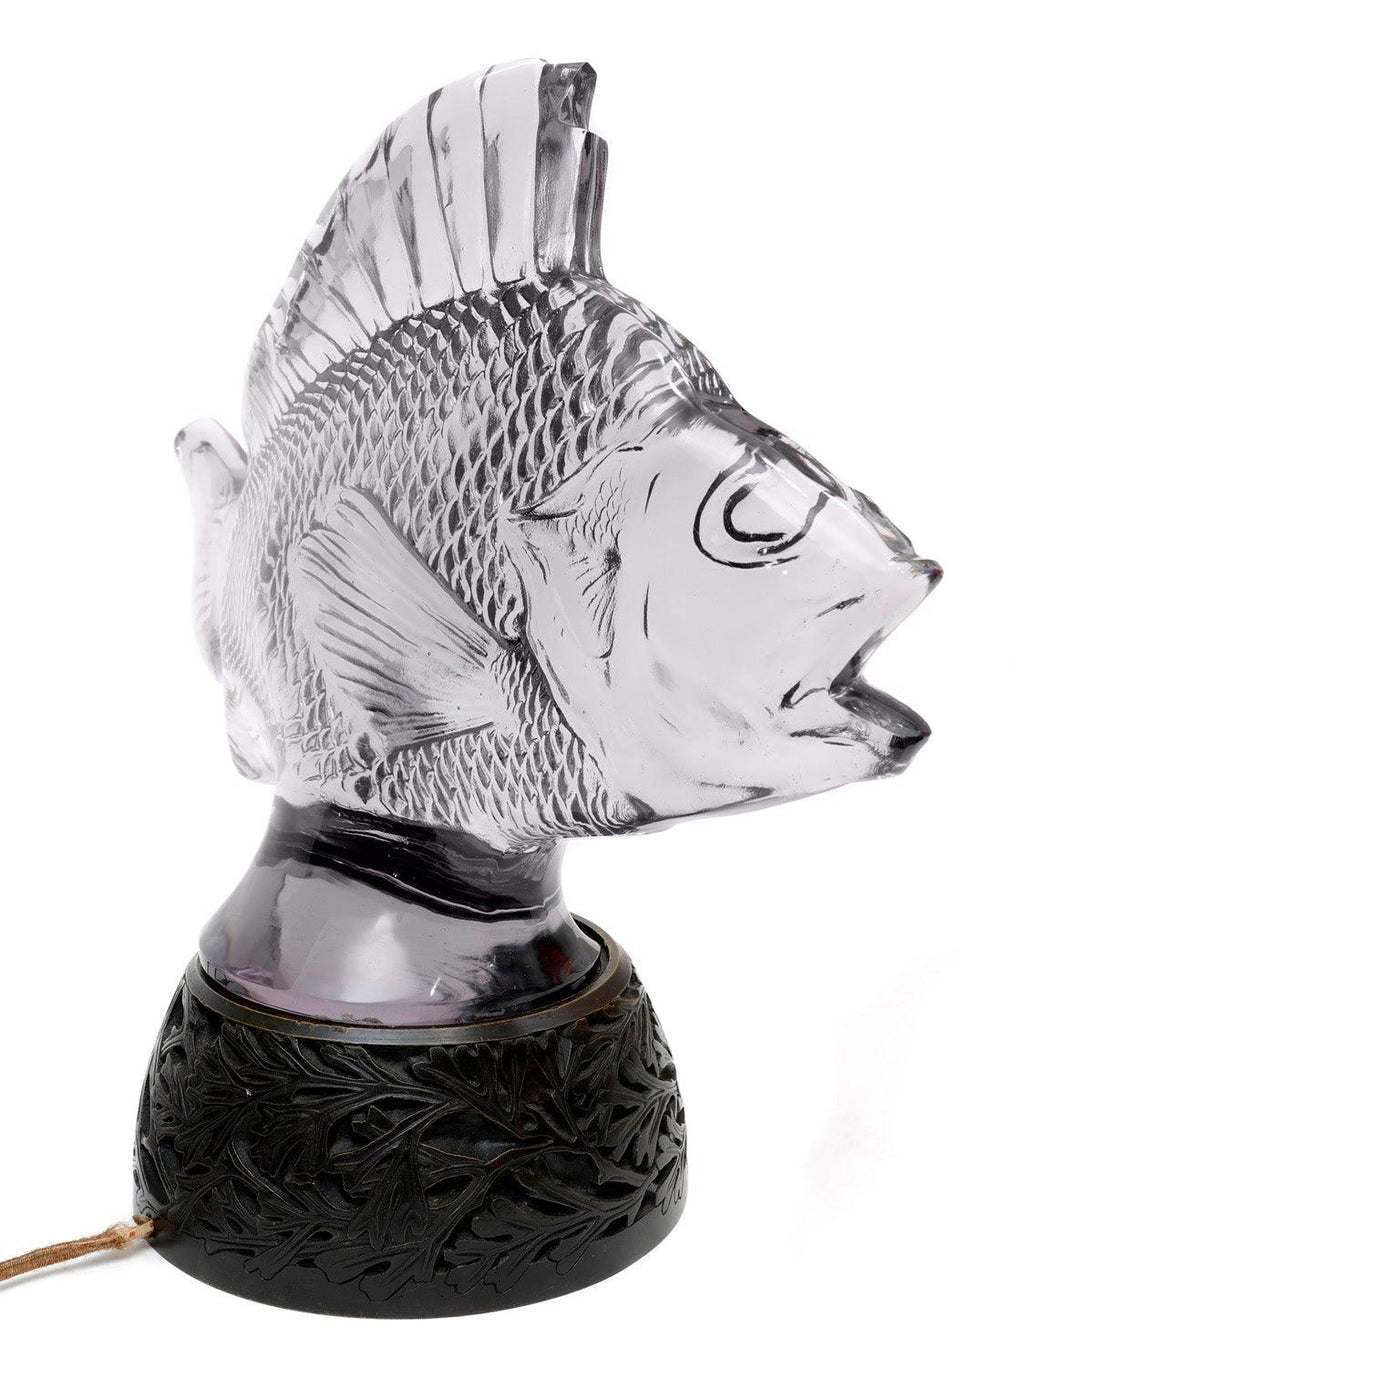 Lalique Glass Fish Sculpture Lamp - Only Authentics